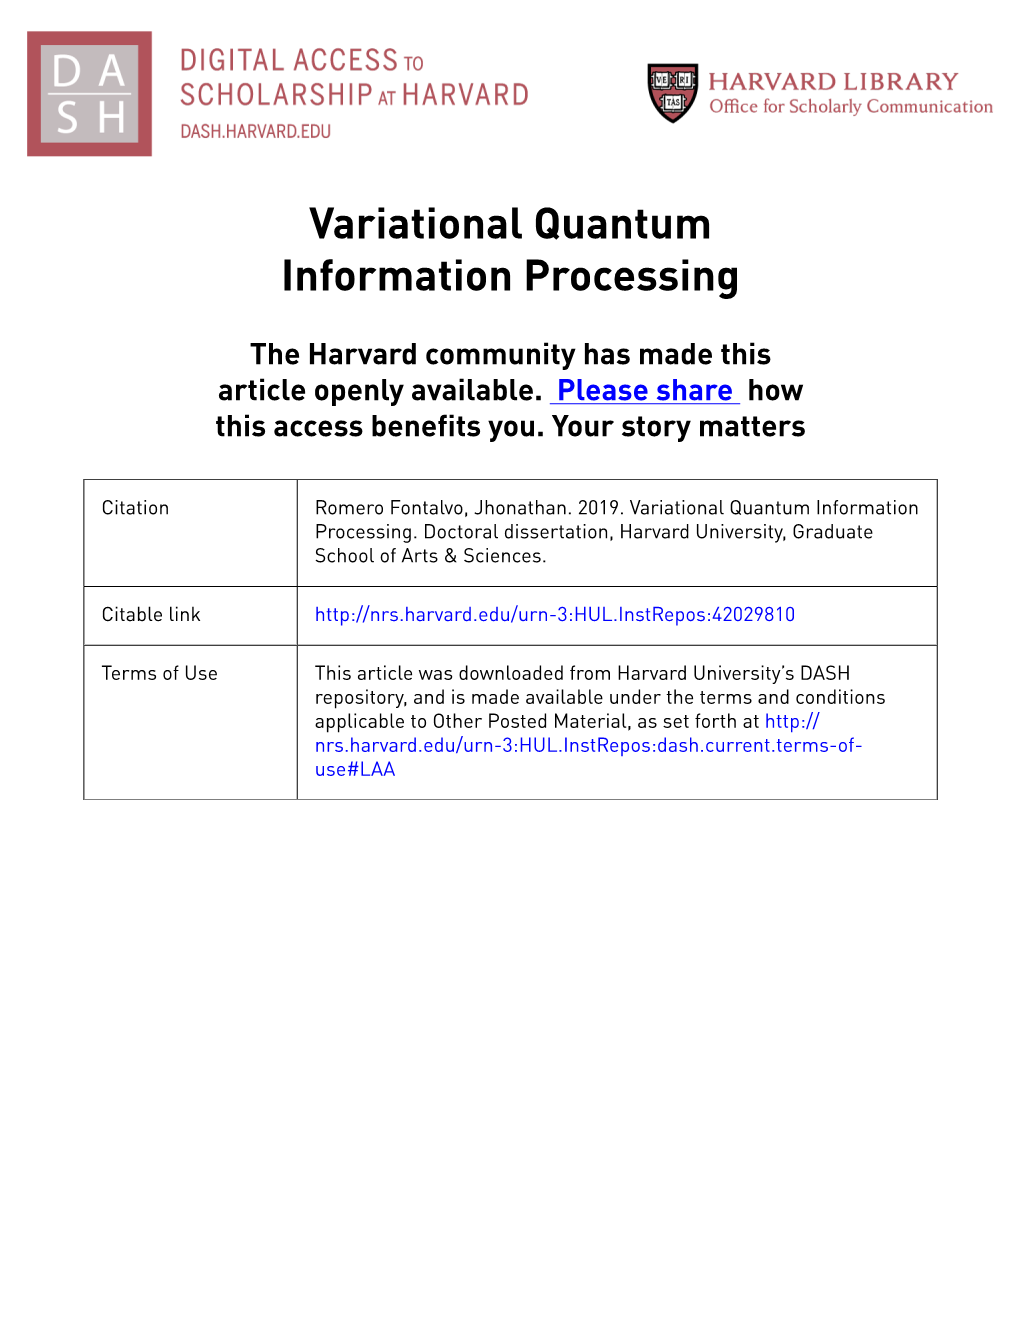 Variational Quantum Information Processing